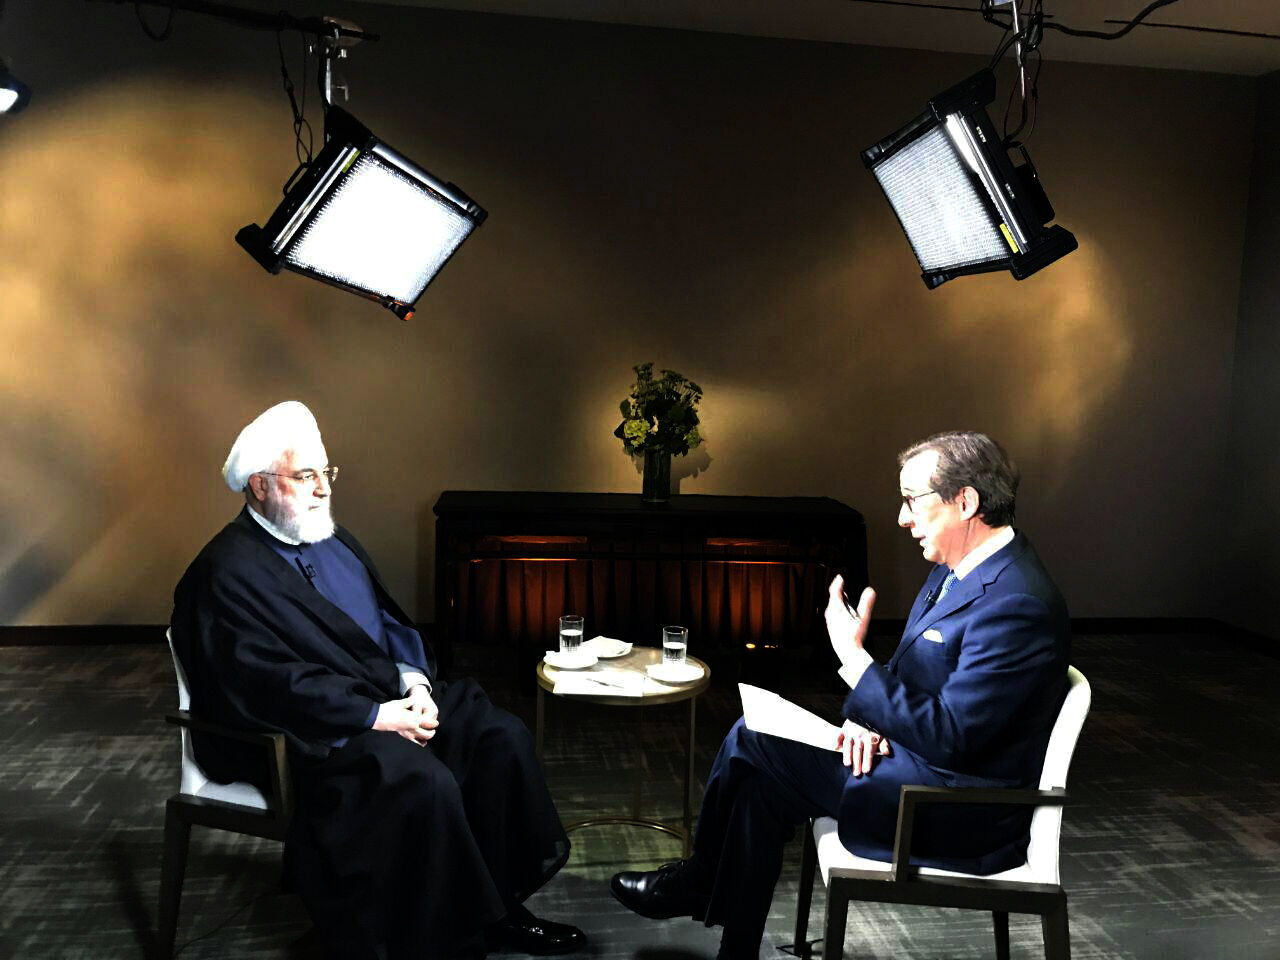 روحانی در گفت و گو با فاکس نیوز مطرح کرد؛ شرط ایران برای مذاکره با آمریکا